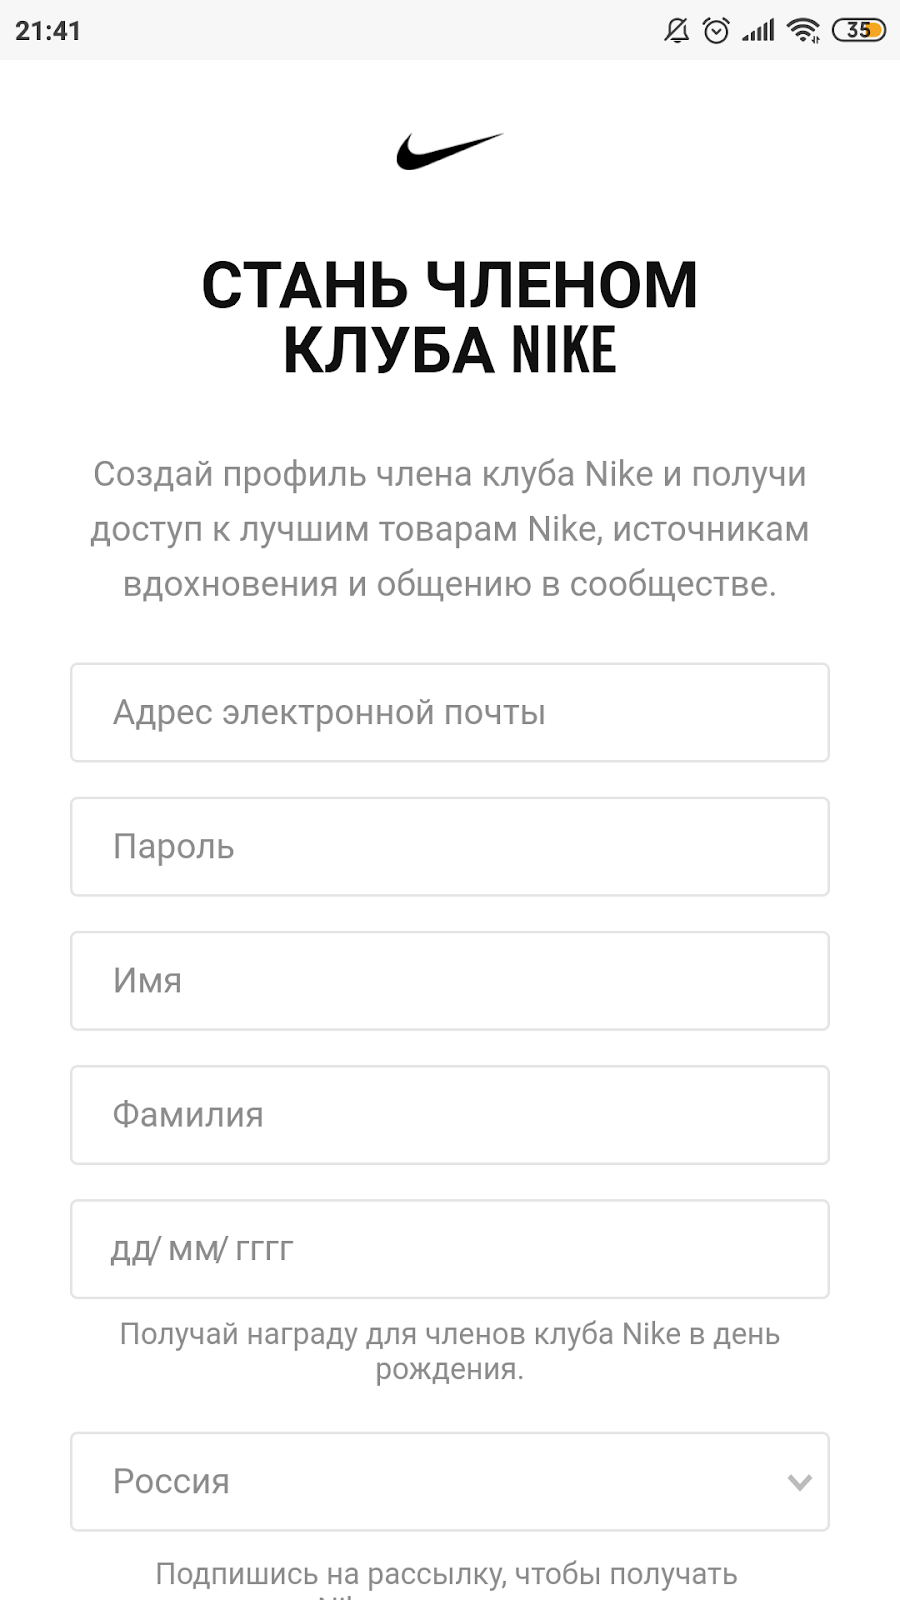 Регистрируясь в приложении, ты автоматически становишься членом программы лояльности Nike